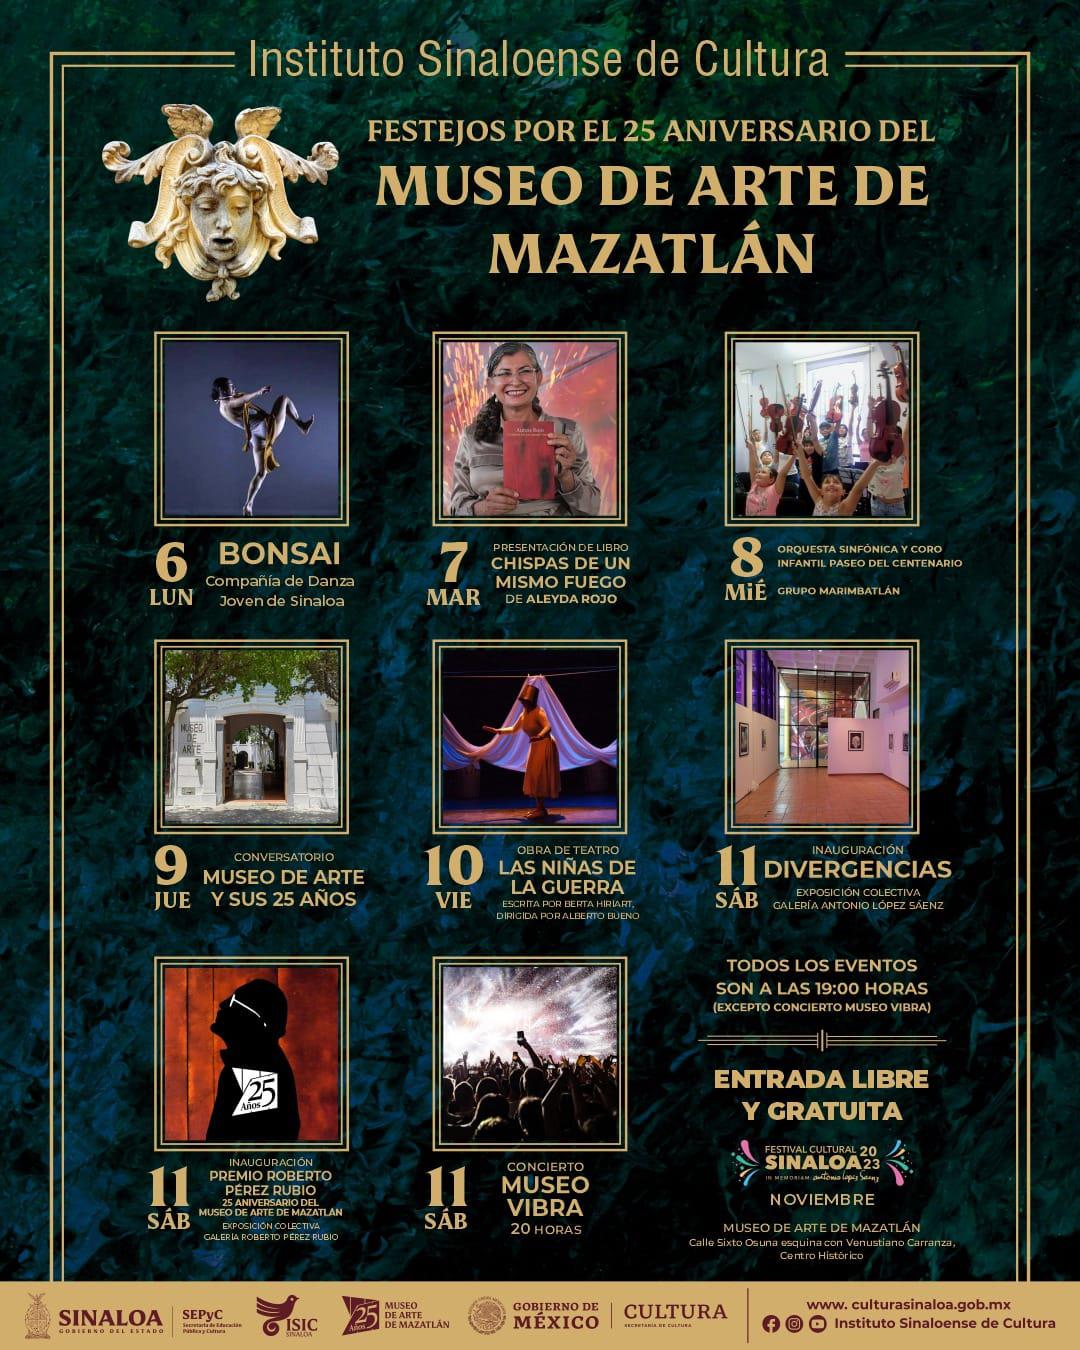 $!La celebración por los 25 años del museo contempla actividades como danza, música, teatro, conferencias y literatura.